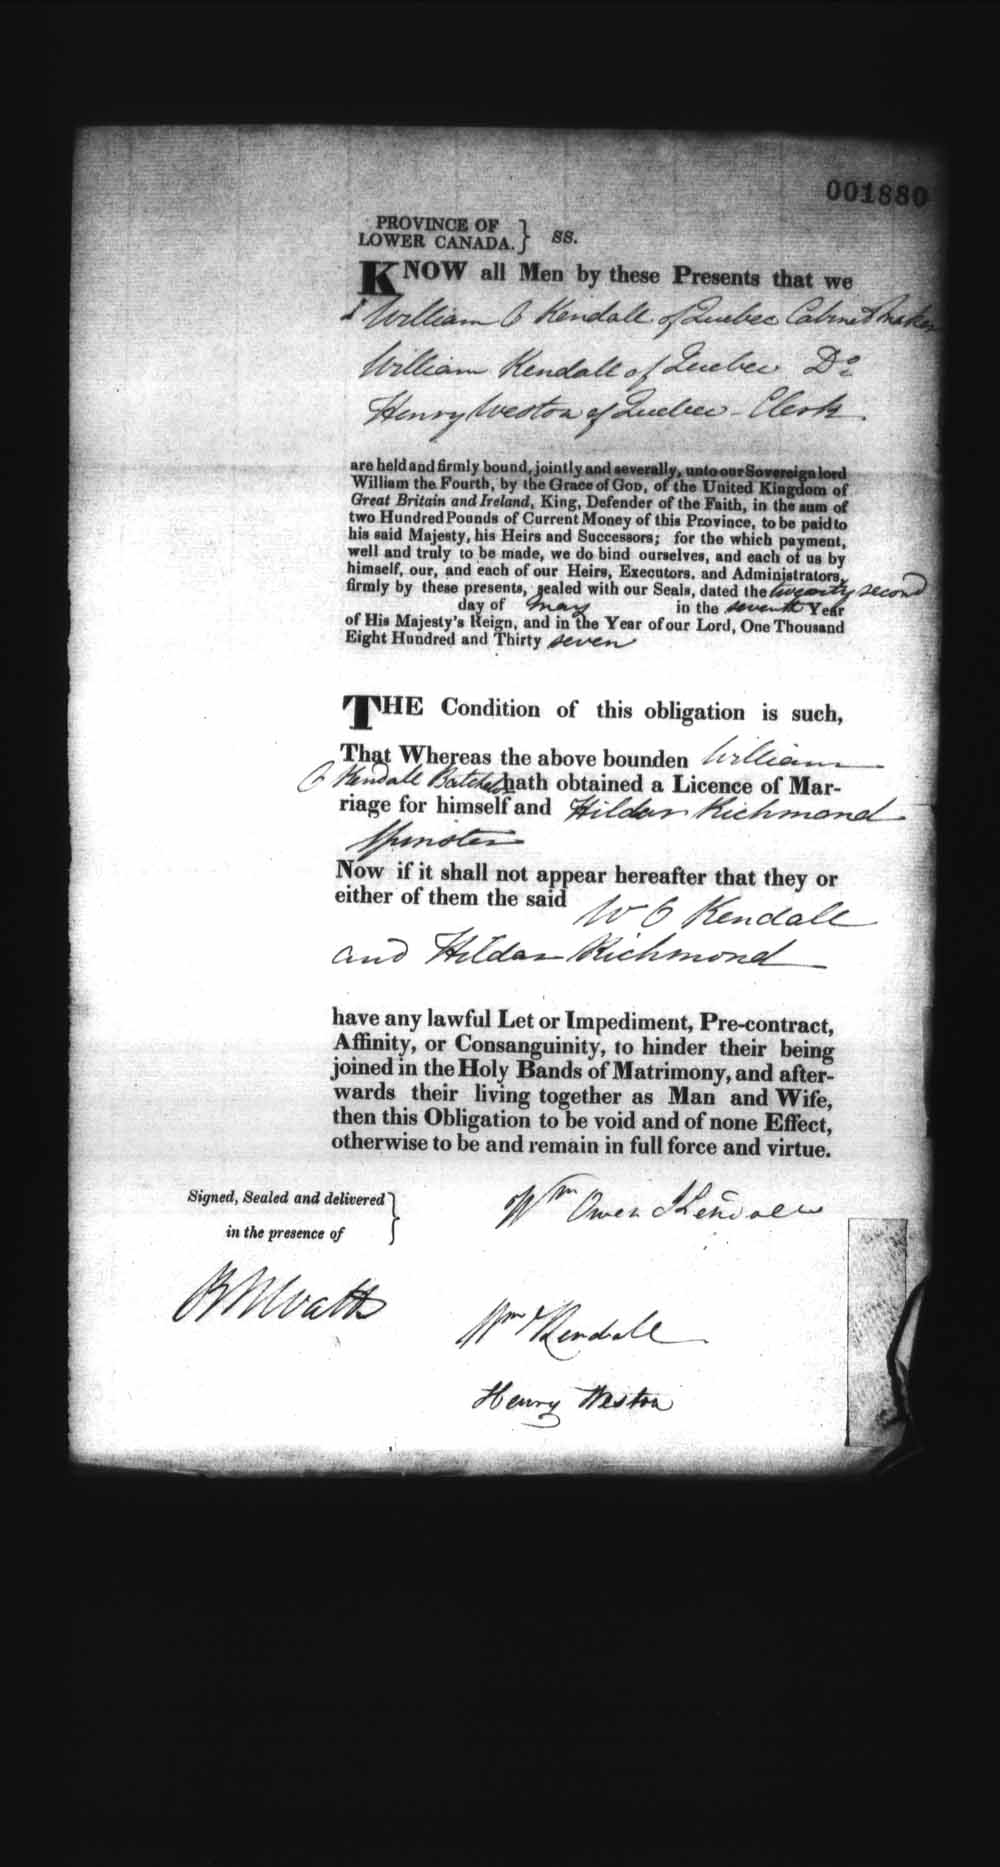 Page numérisé de Cautionnements de mariages pour le Haut-Canada et le Bas-Canada (1779-1865) pour l'image numéro: e008238214